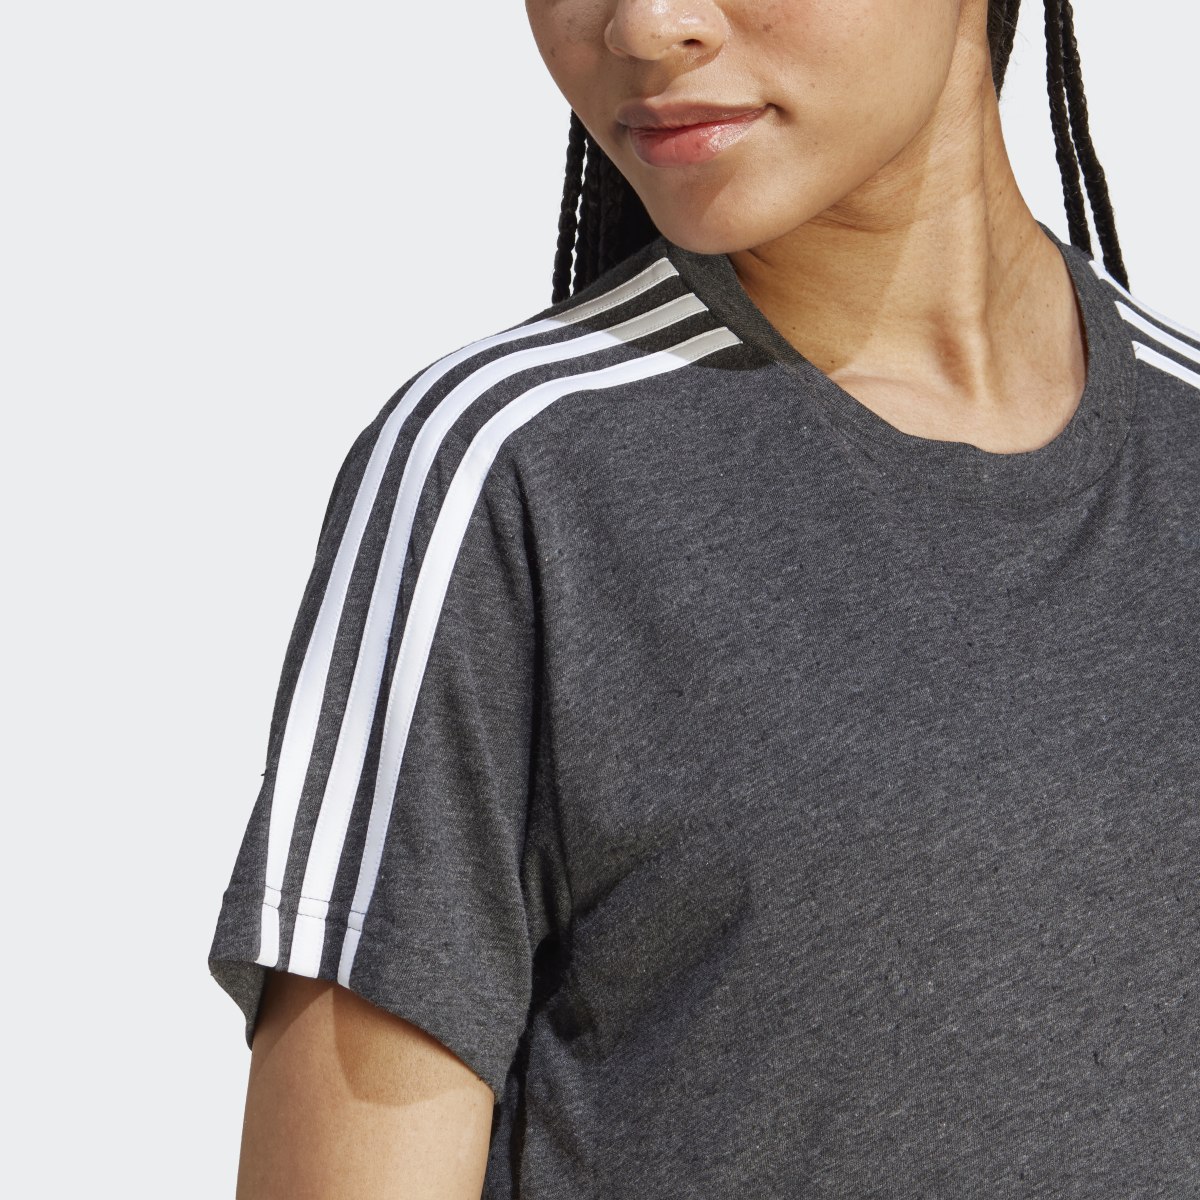 Adidas T-shirt de maternité (Maternité). 7